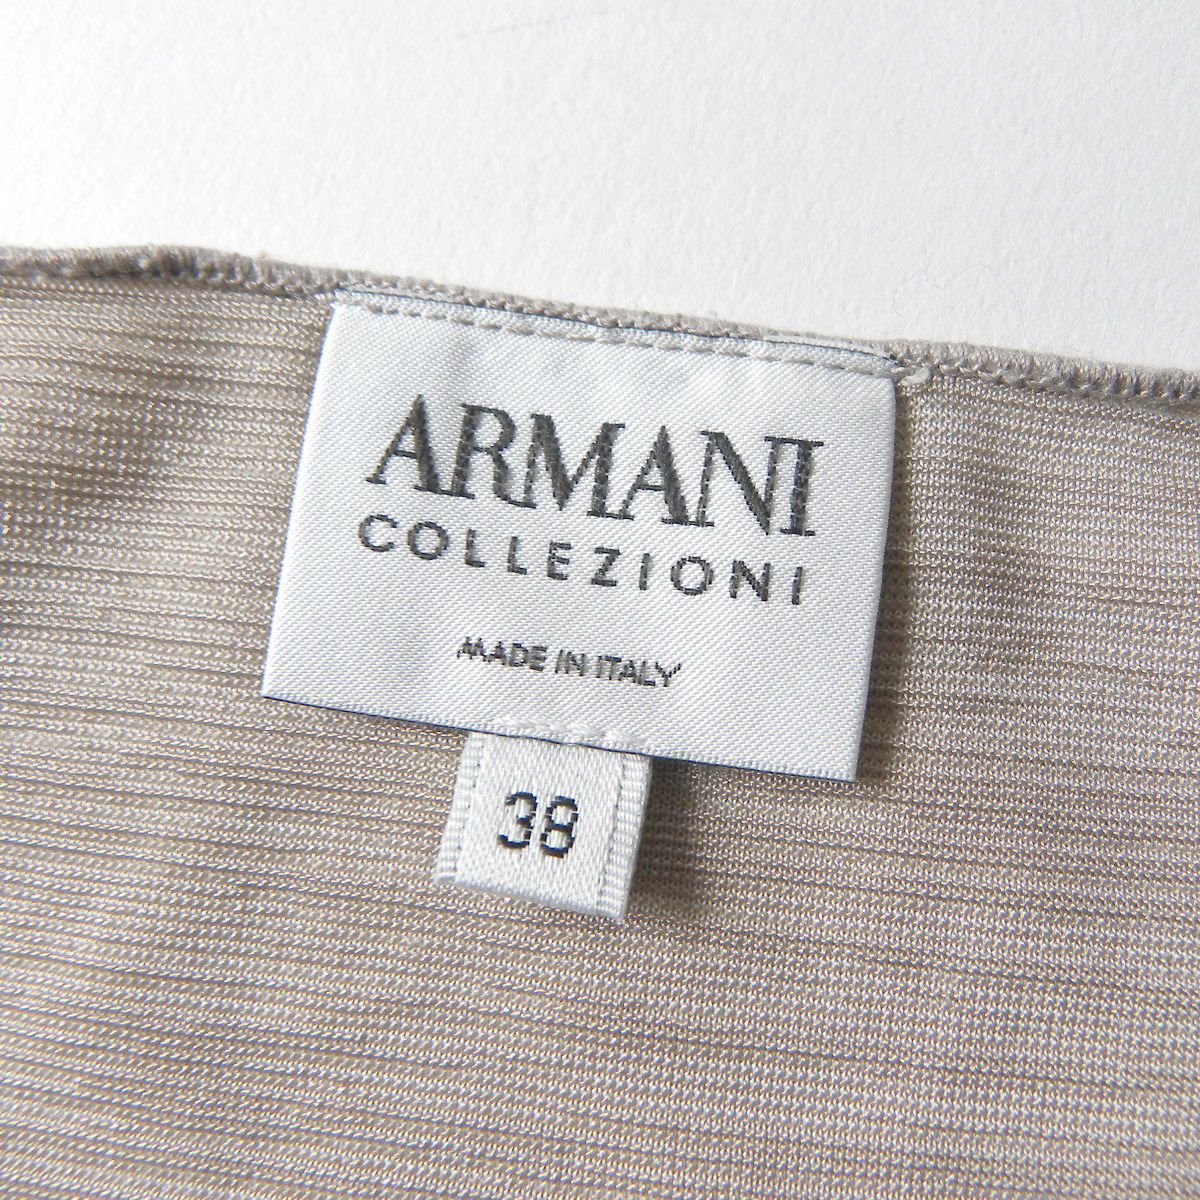 イタリア製 アルマーニコレツィオーニ ARMANI COLLEZIONI Vネックフロントギャザートップス 半袖 38 ベージュ l0423-10_画像3